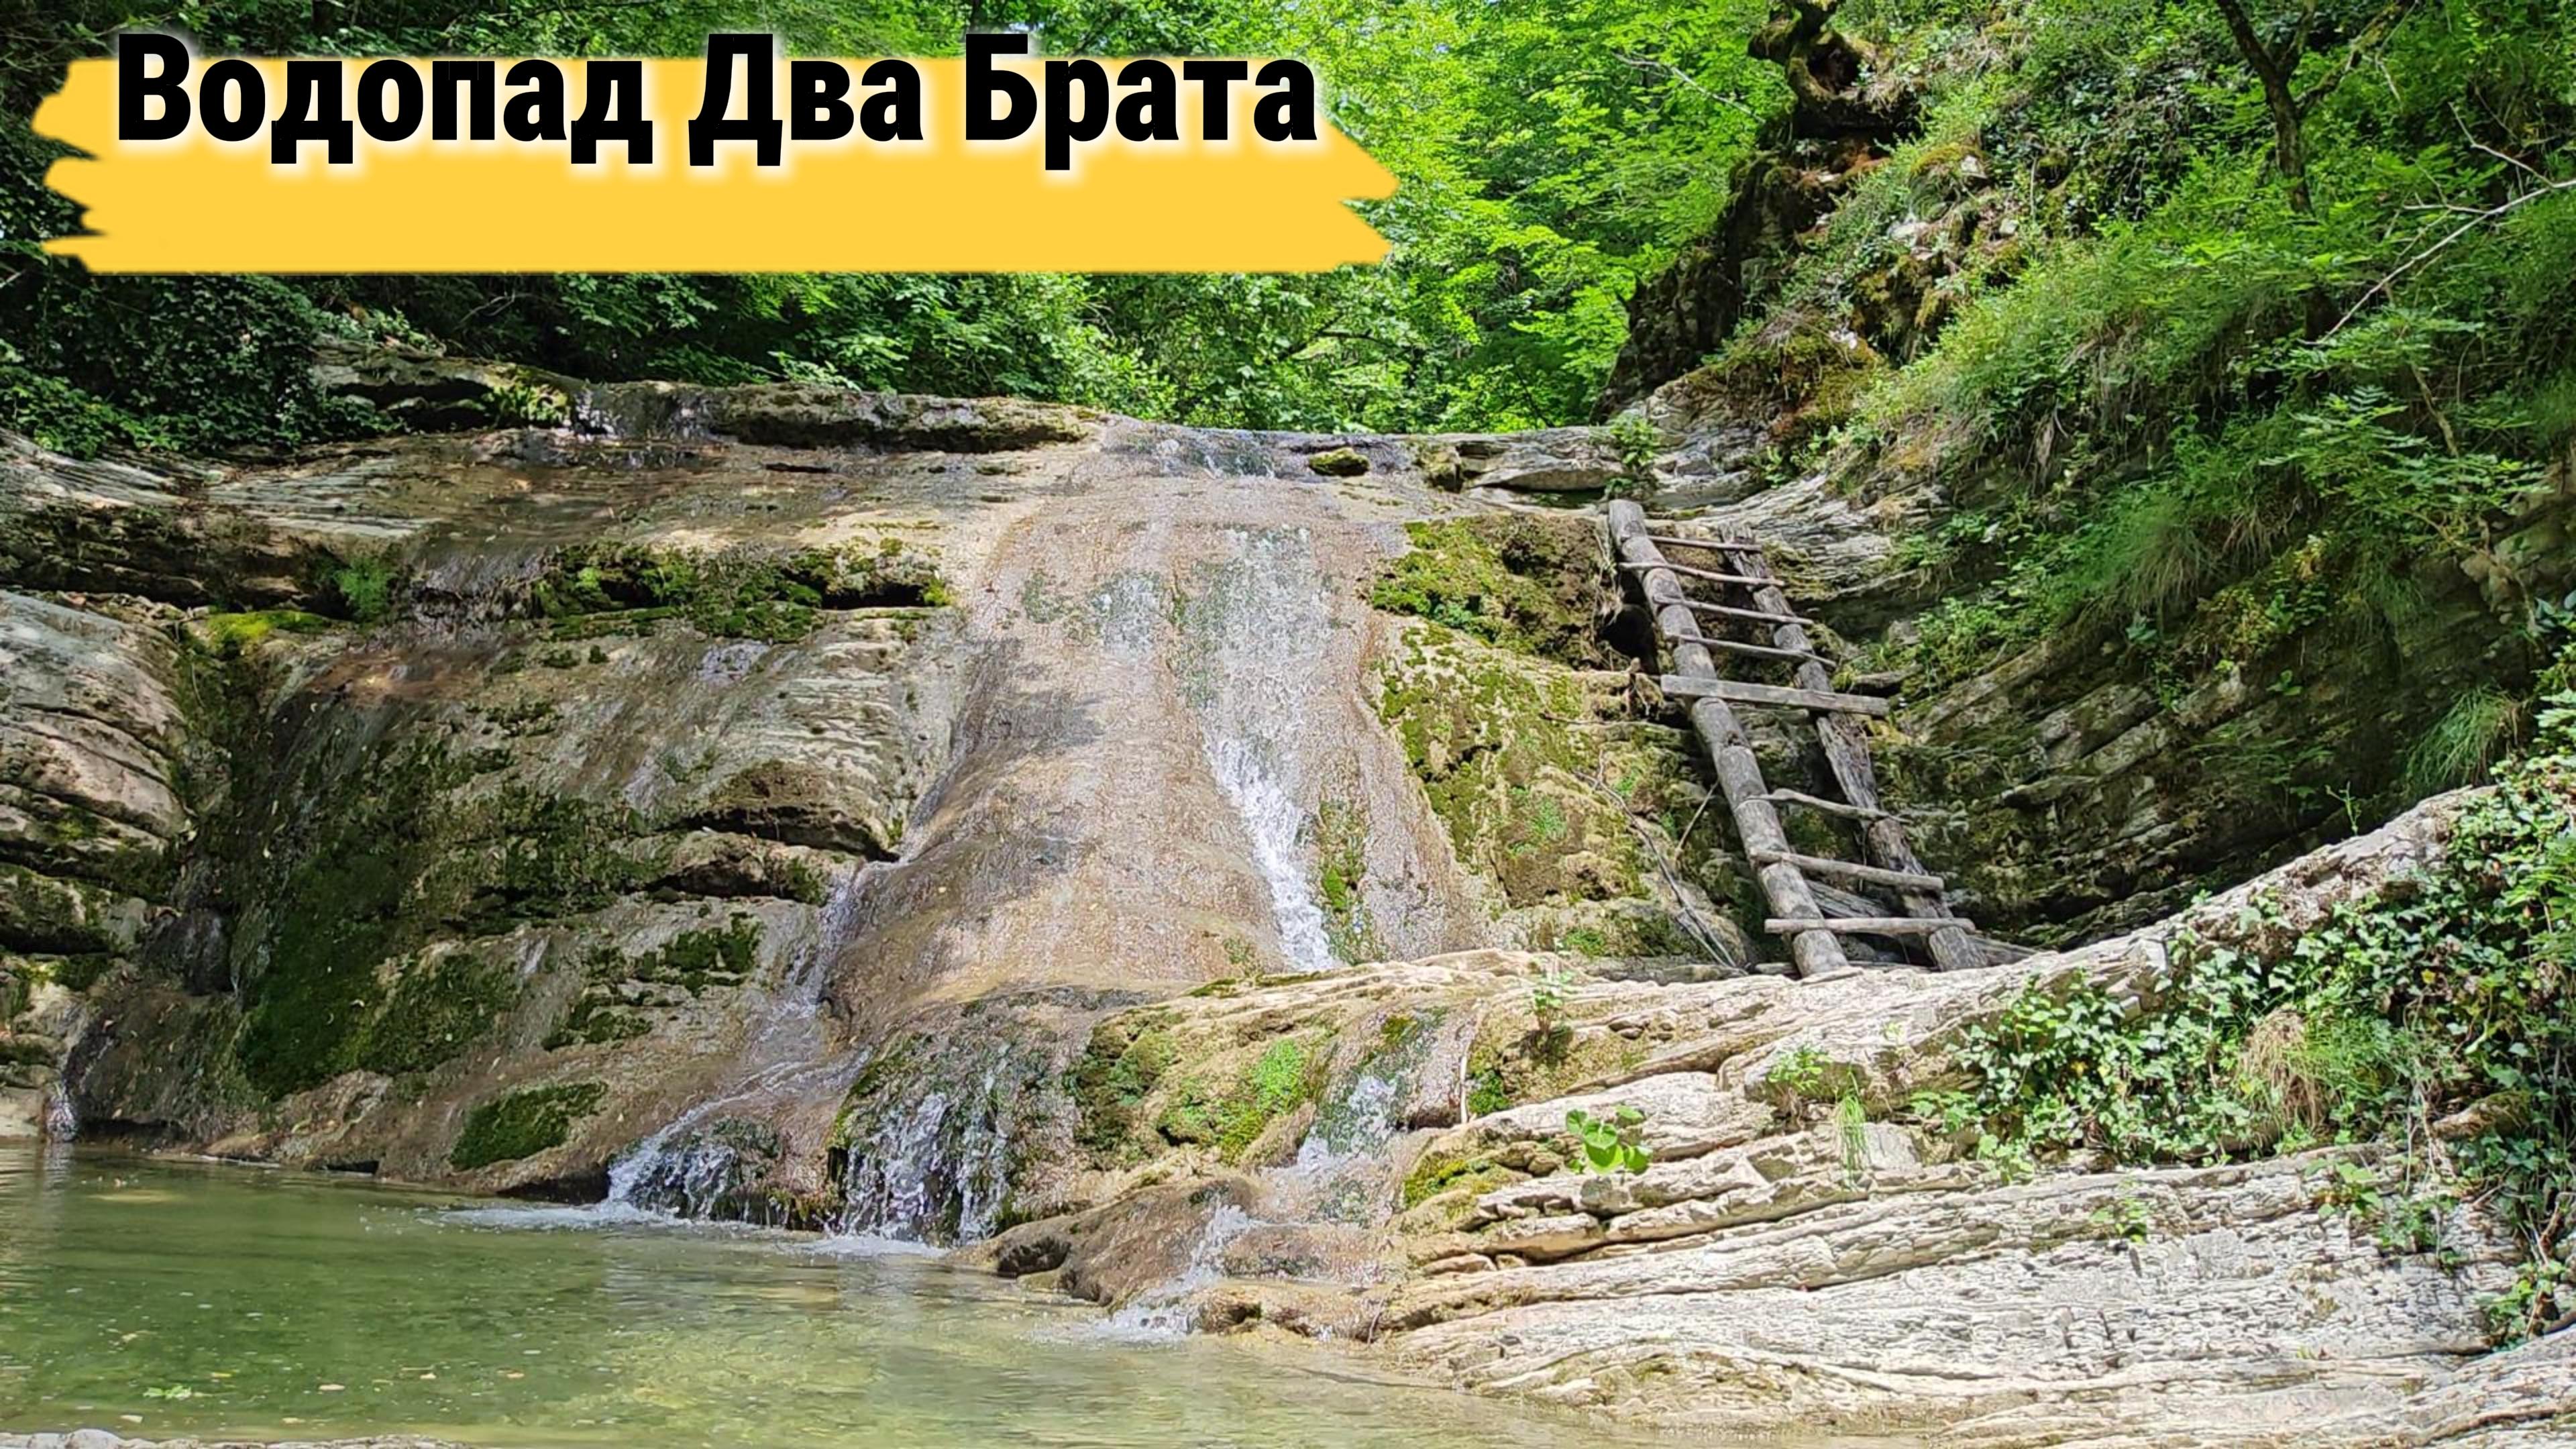 Водопад Два брата - Плесецкие водопады